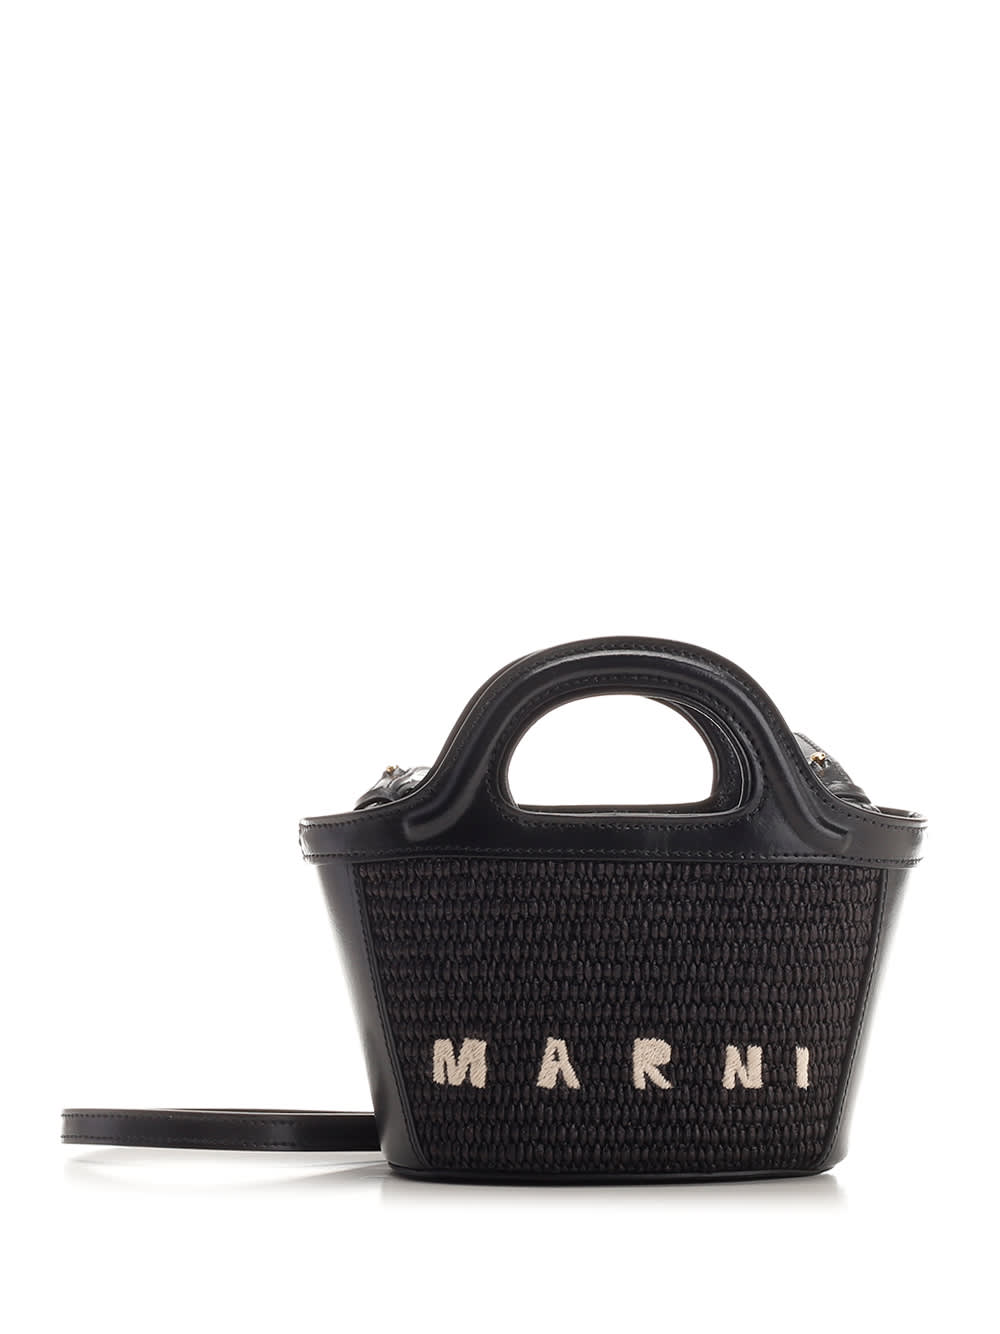 Marni Tropicalia Small Hand Bag